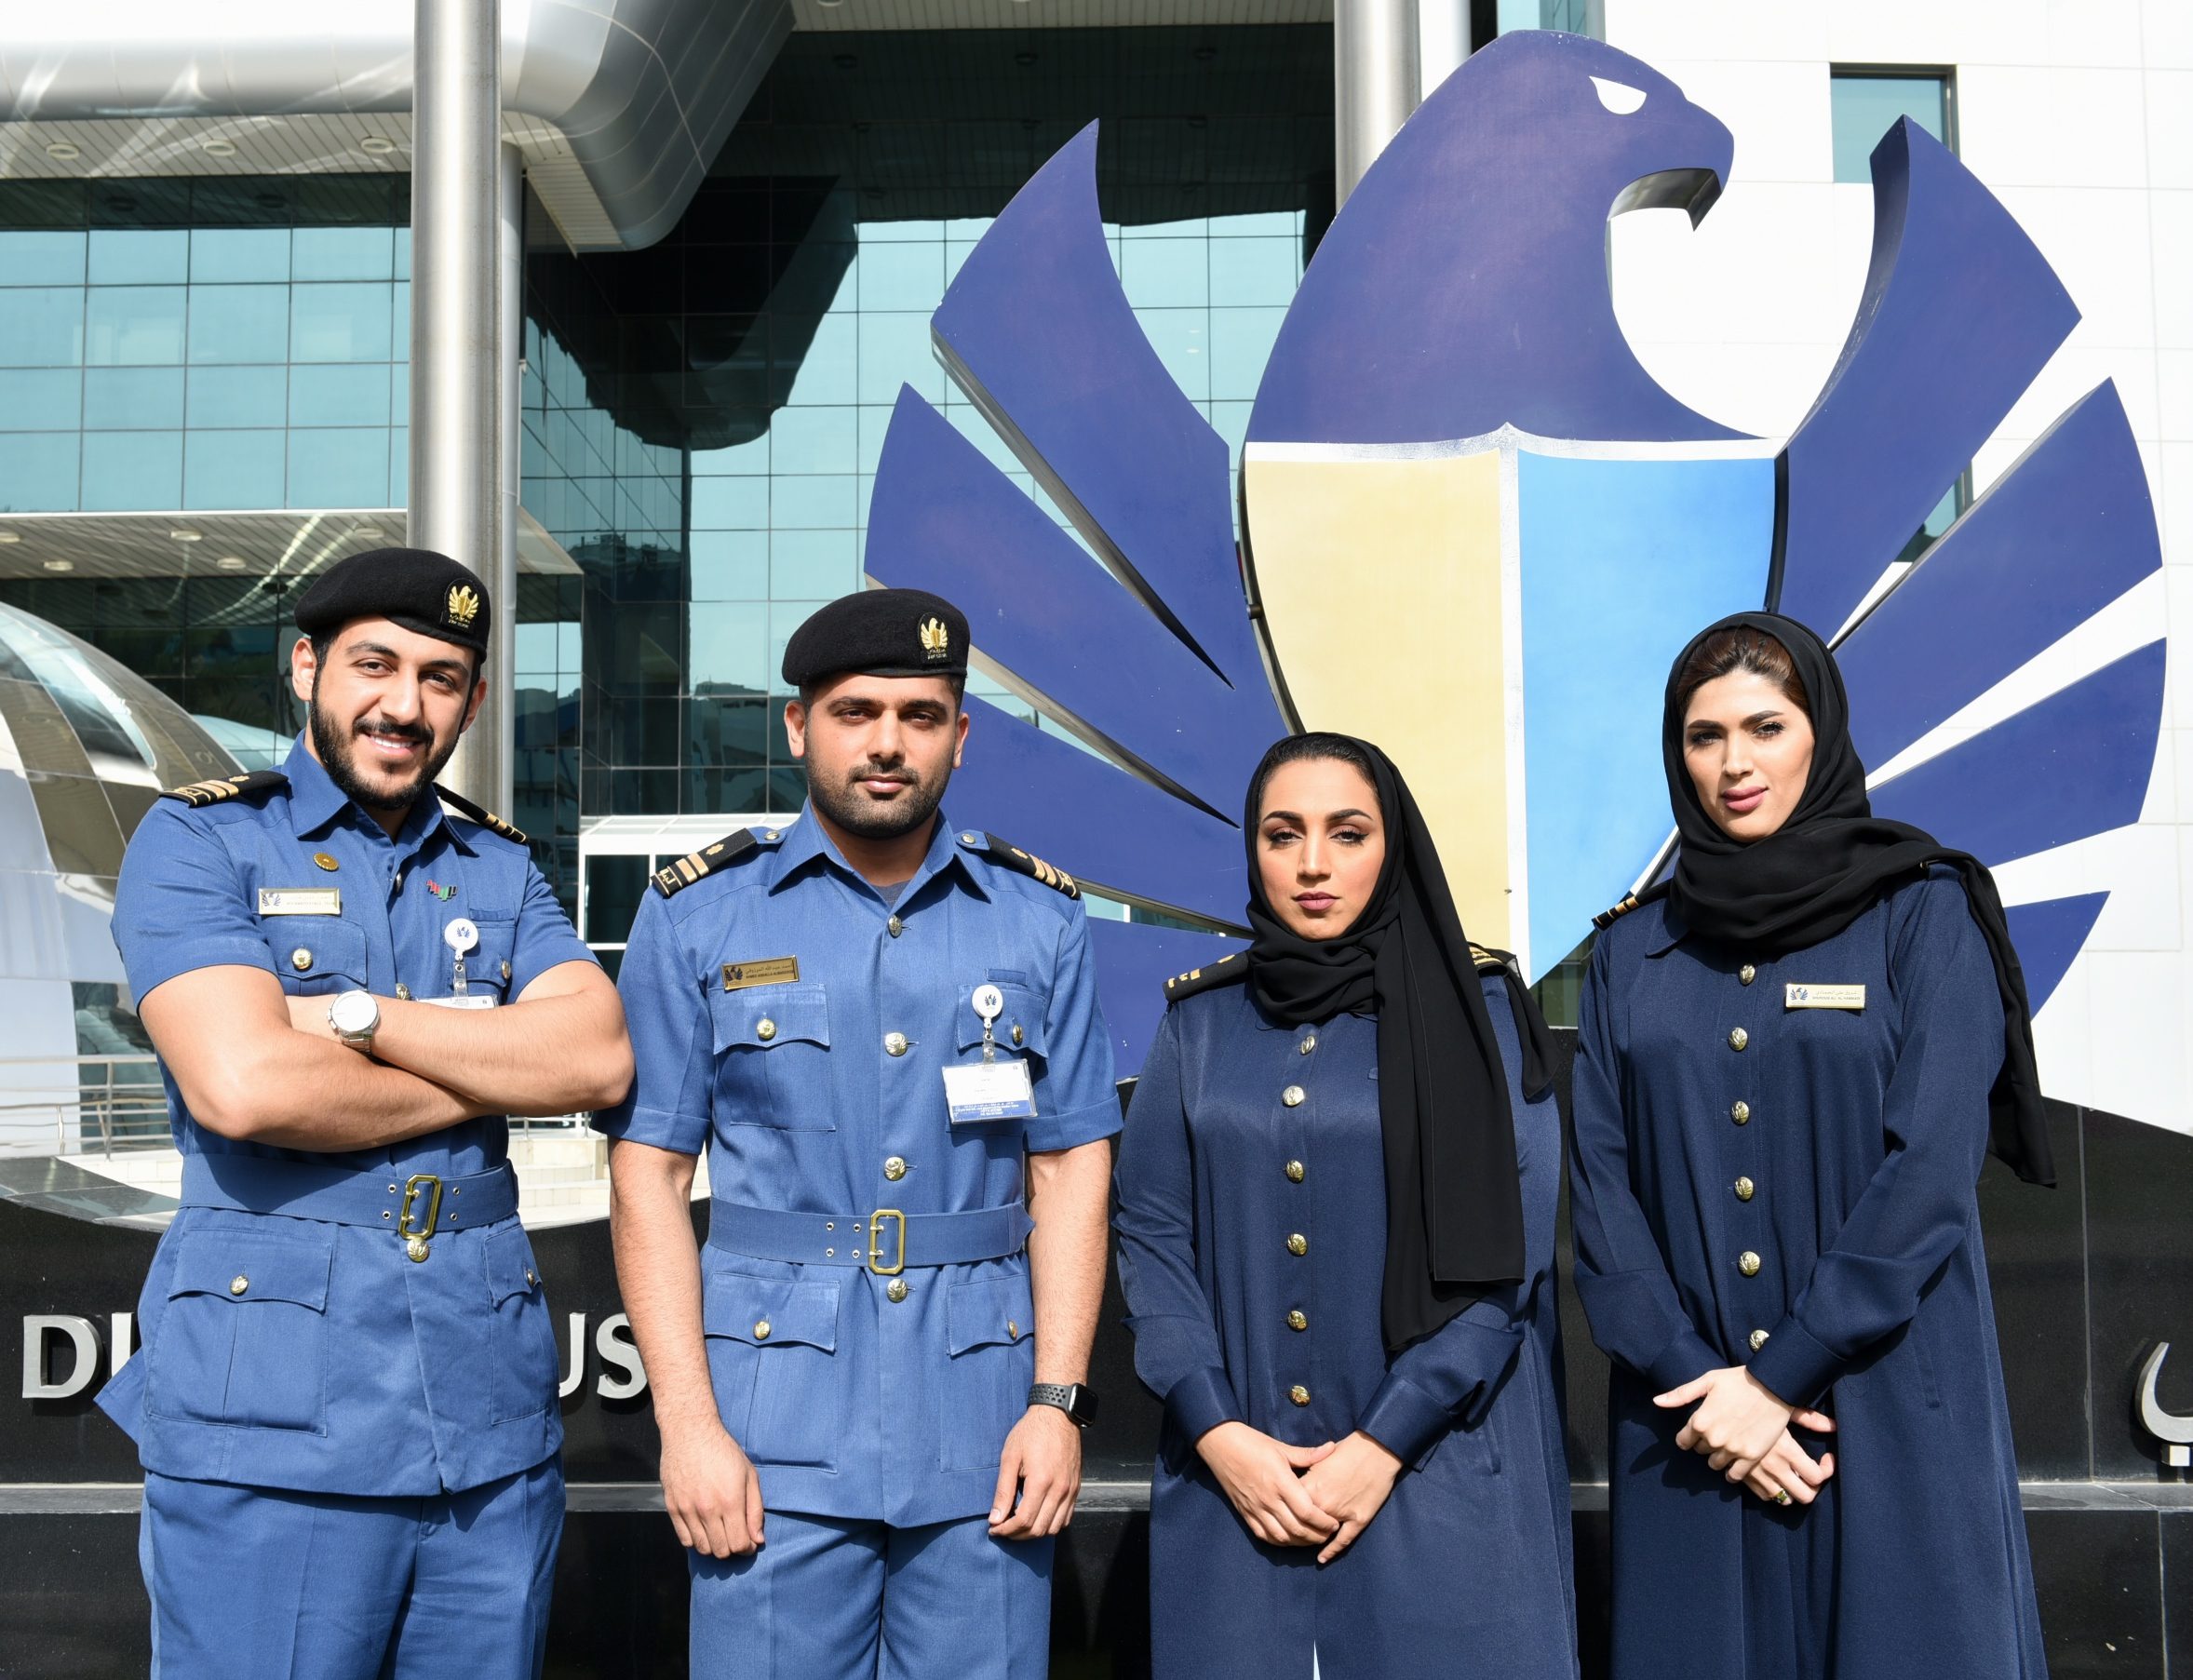 Dubai Customs Jobs - New Vacancies in Dubai Customs